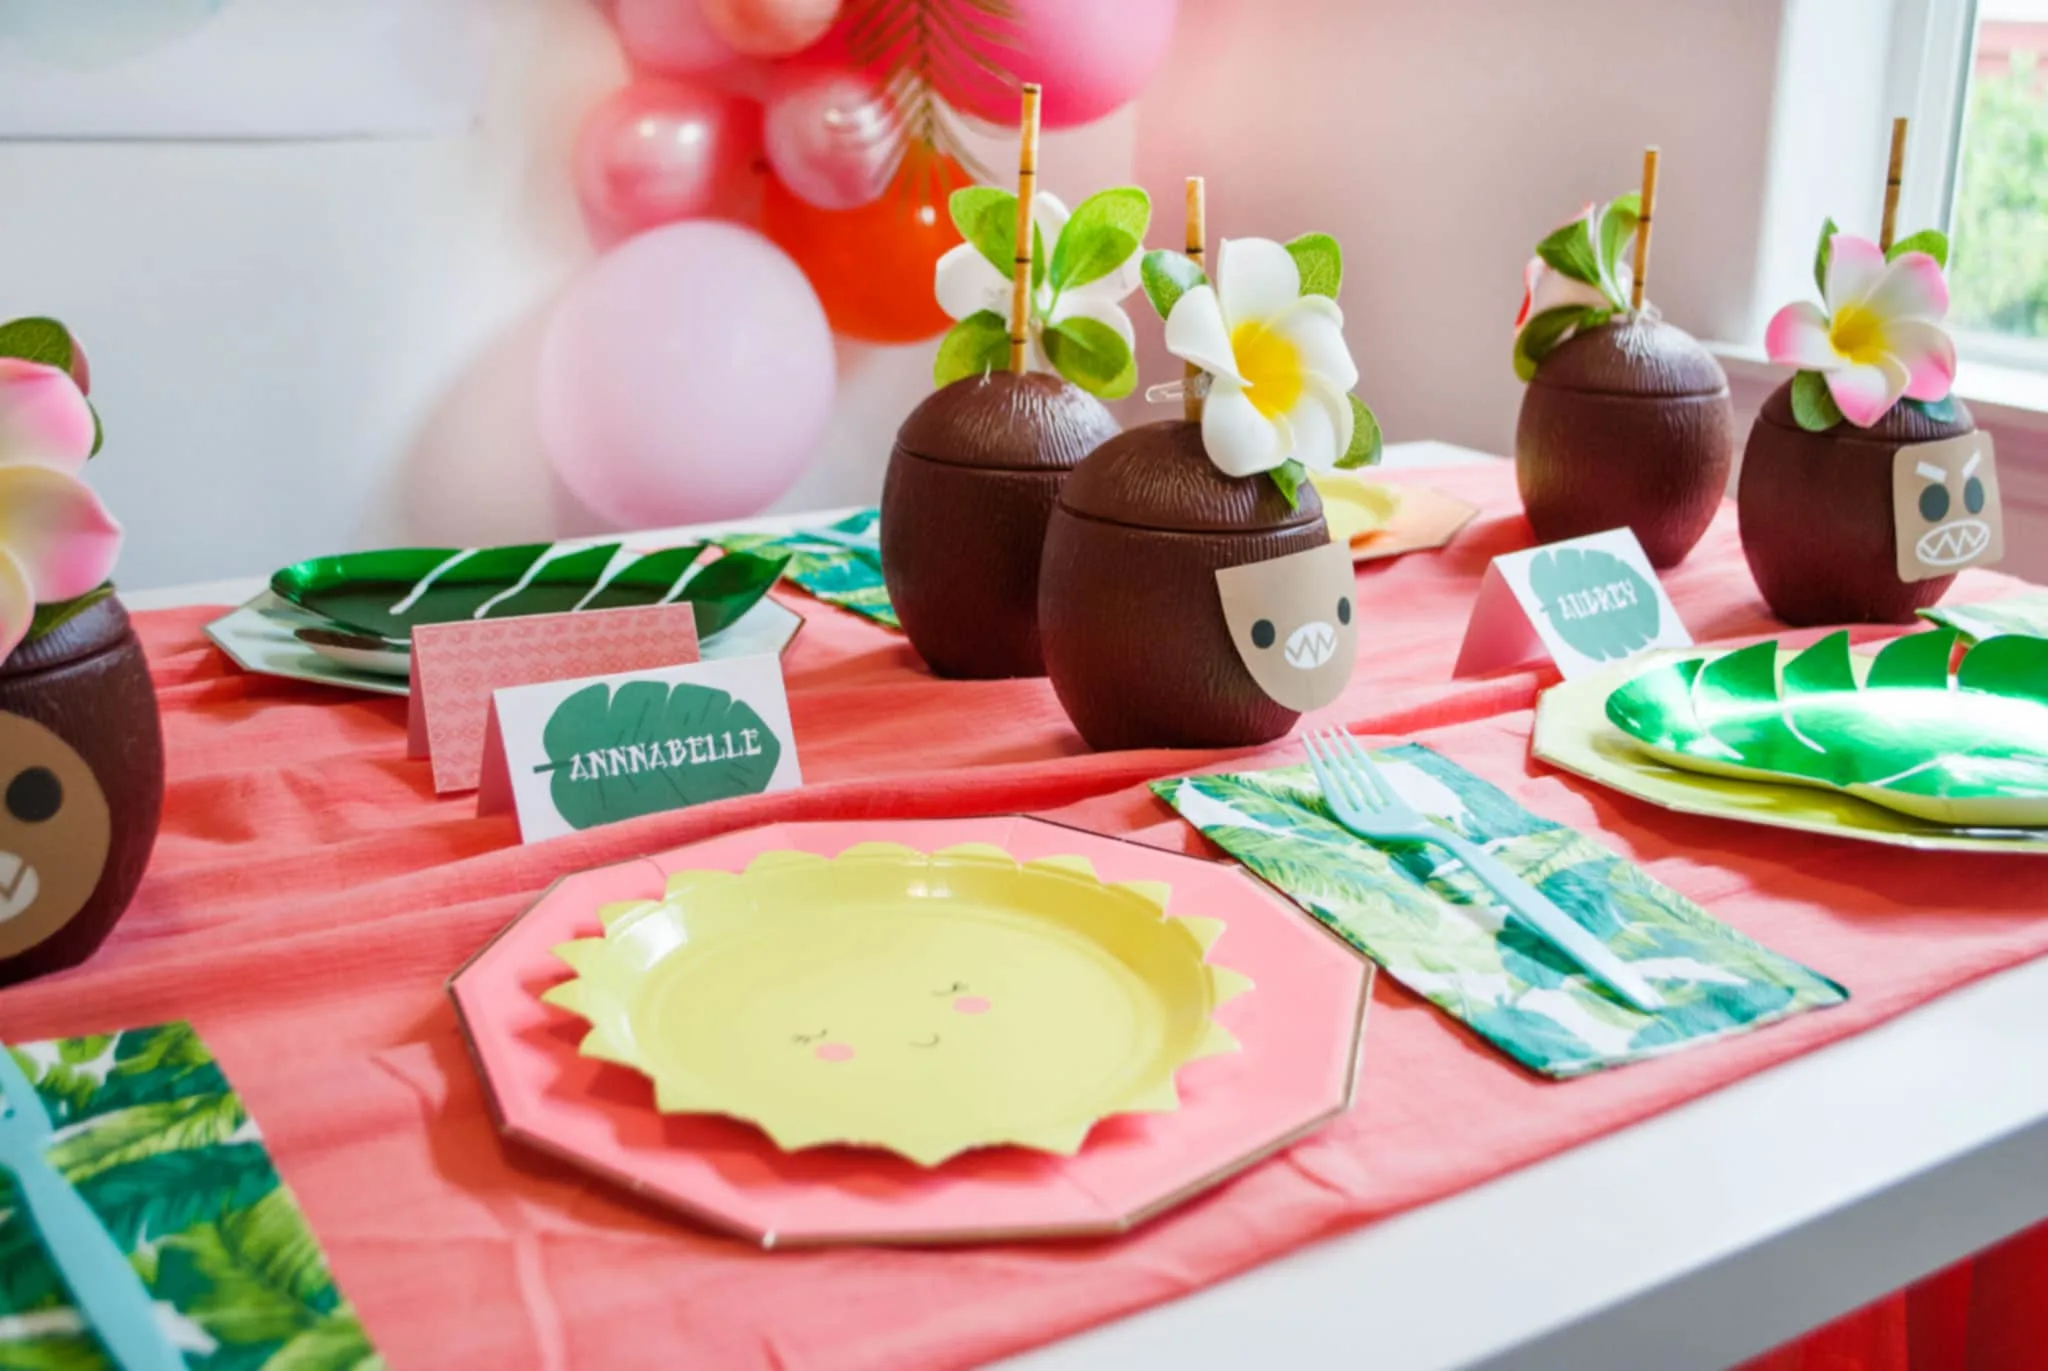 Moana Birthday Party Ideas - Project Nursery